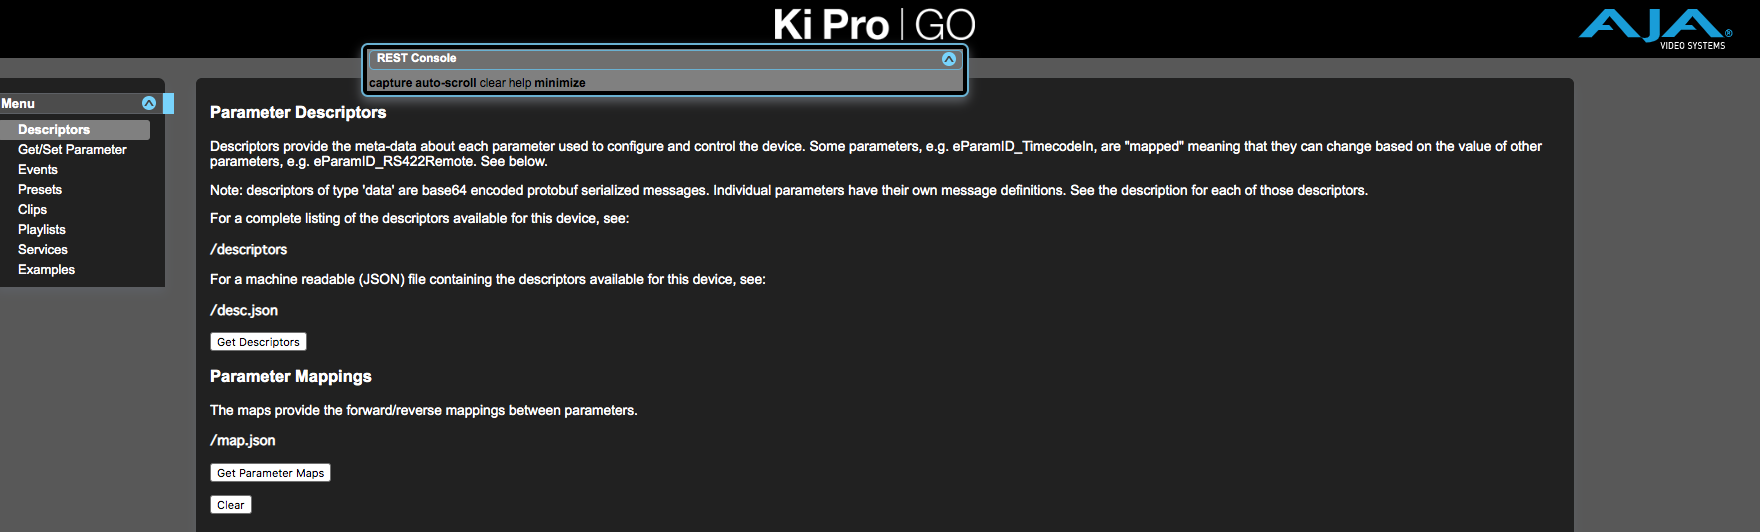 Ki Pro Go は制御向けに API （アプリケーション プログラム インターフェース）を持っていますか？